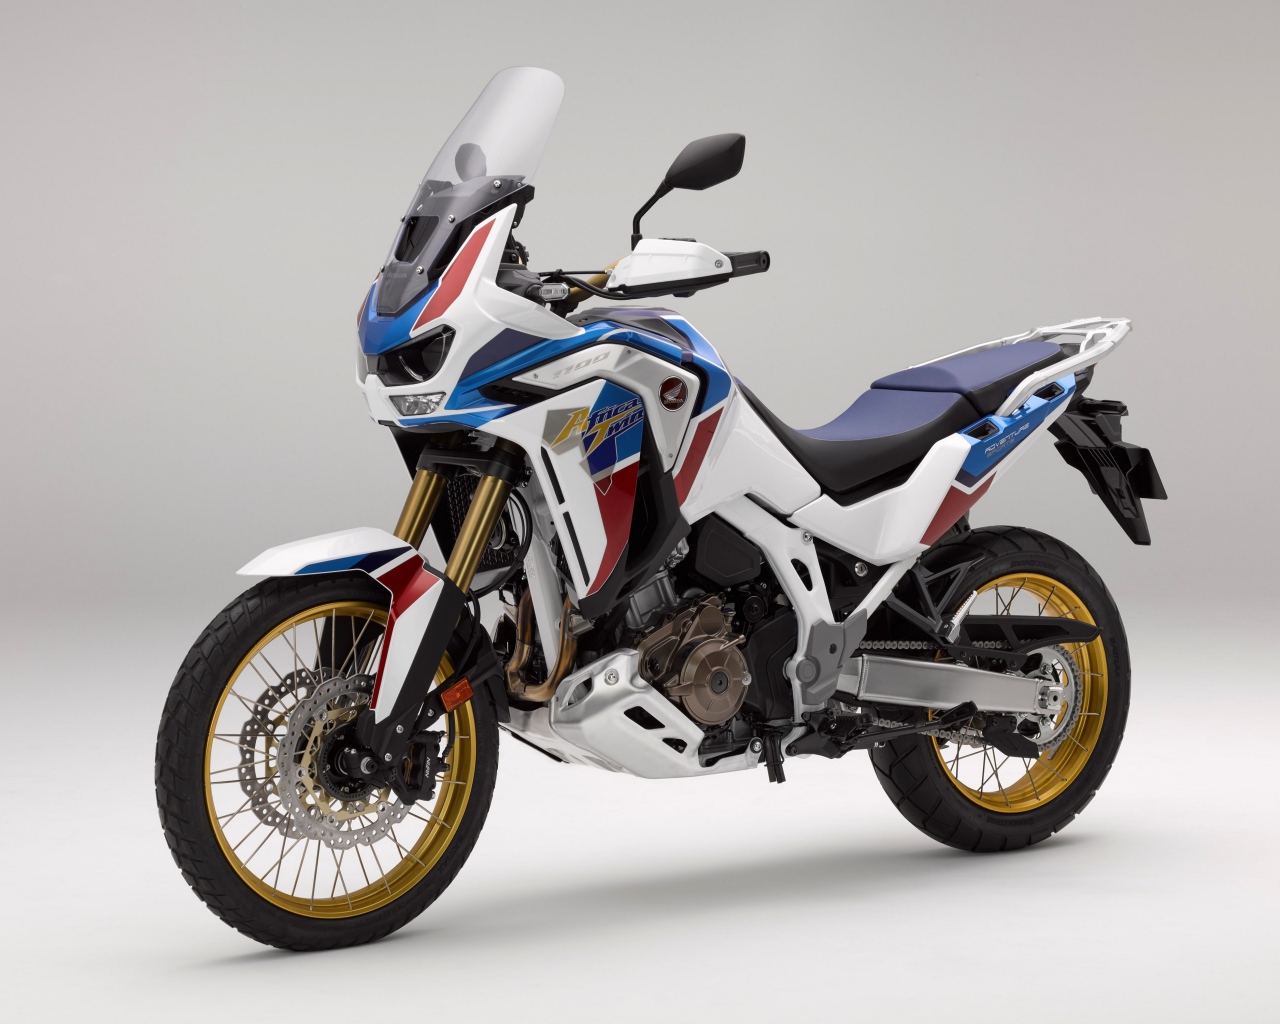 Спортивный мотоцикл Honda  CRF 1000 D, 2020  года на сером фоне